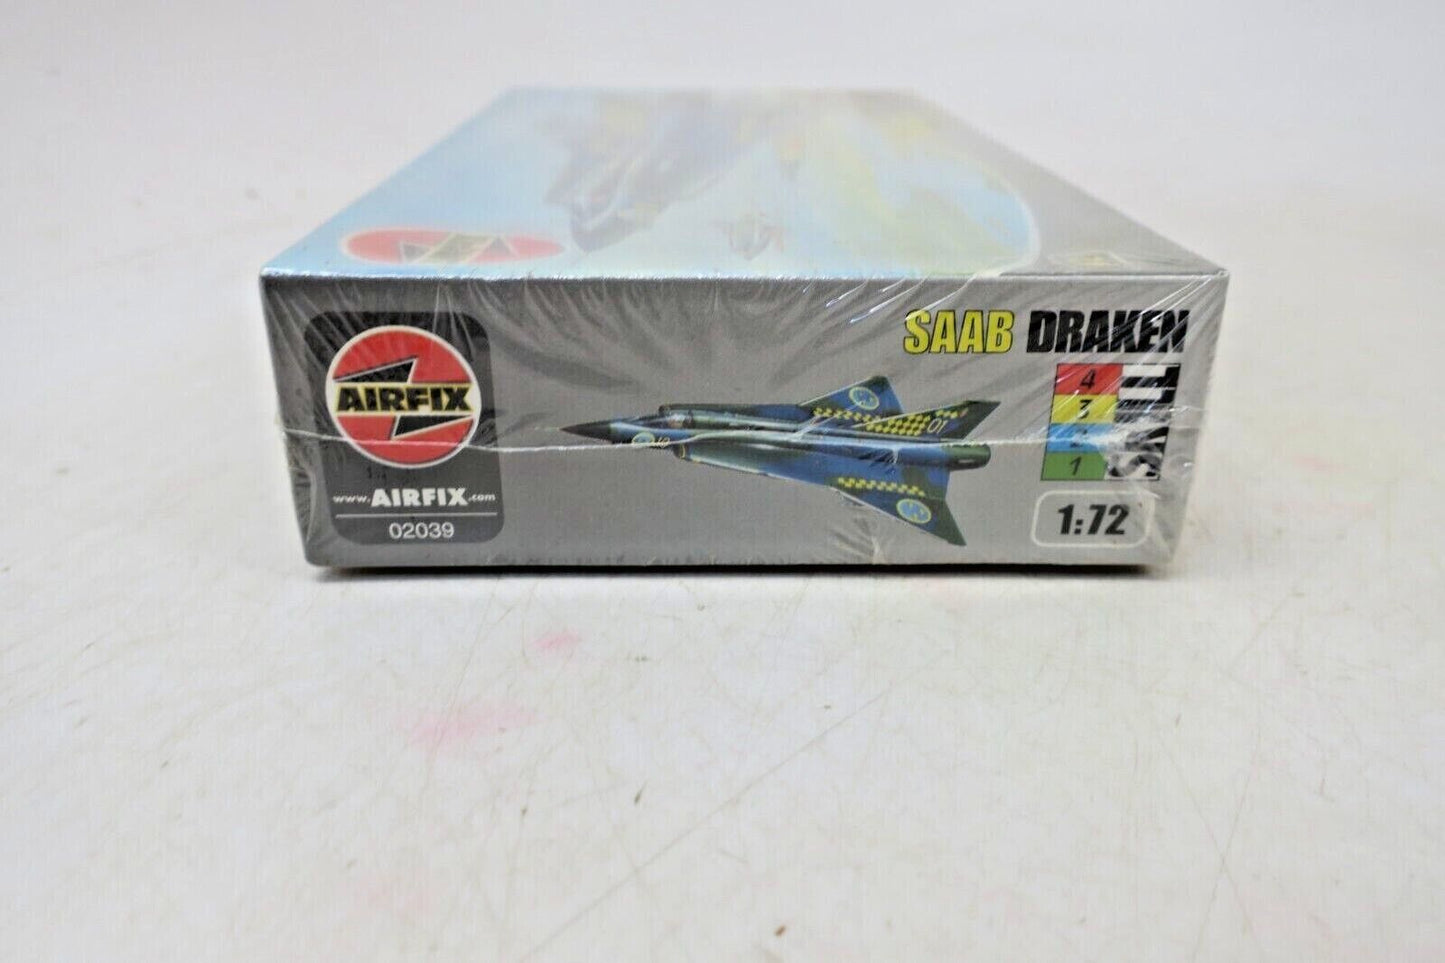 AIRFIX 1:72 SAAB J-35 DRAKEN PLASTIC AIRCRAFT MODEL KIT #02039-4 #269XU